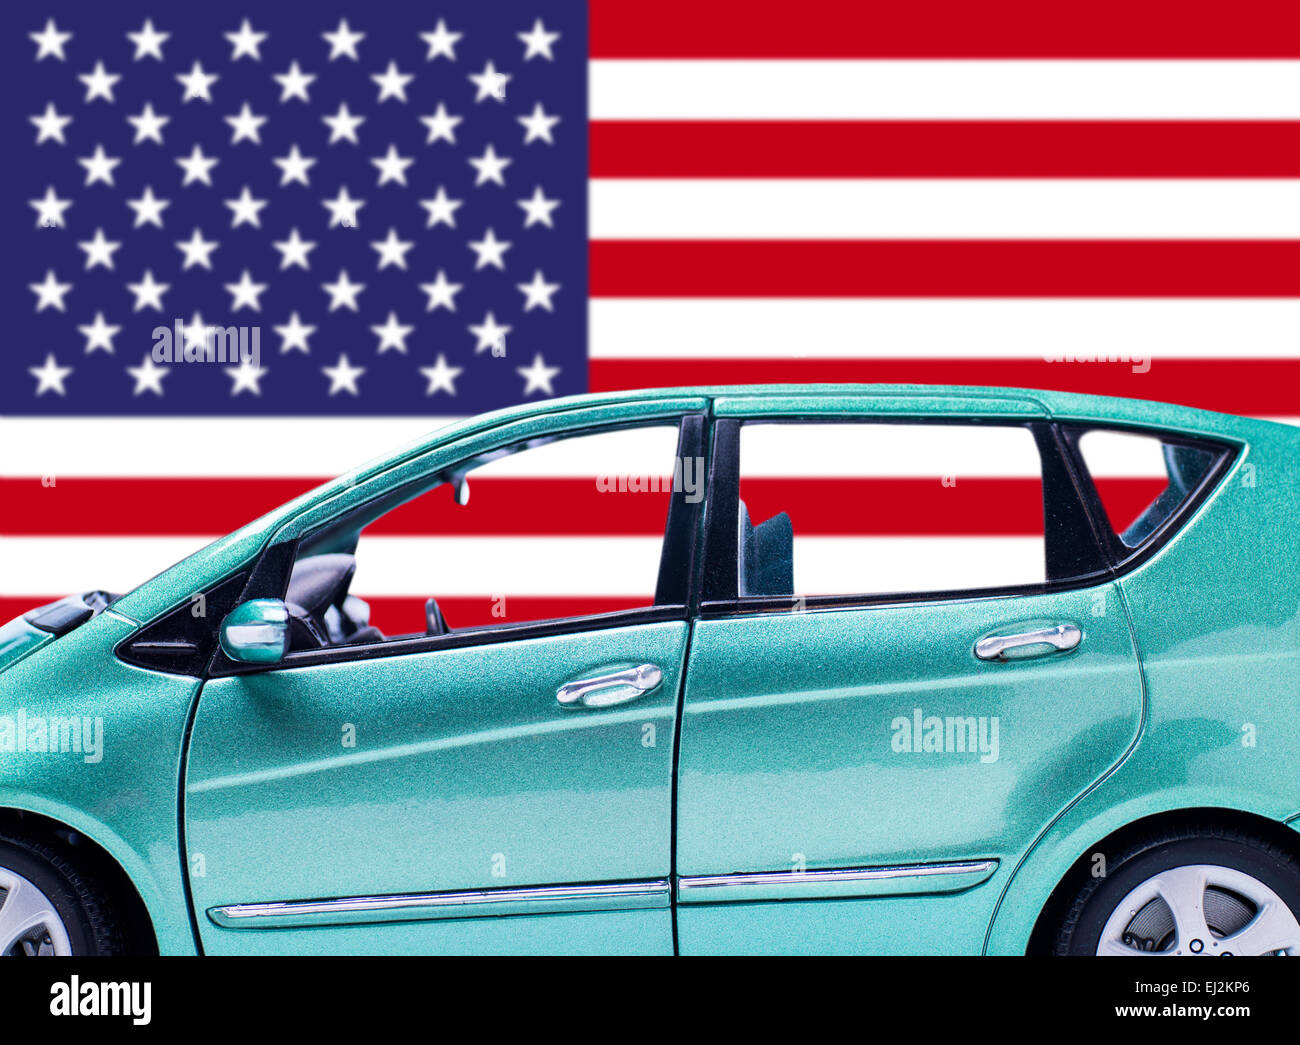 Détail d'une voiture en face du drapeau américain Banque D'Images